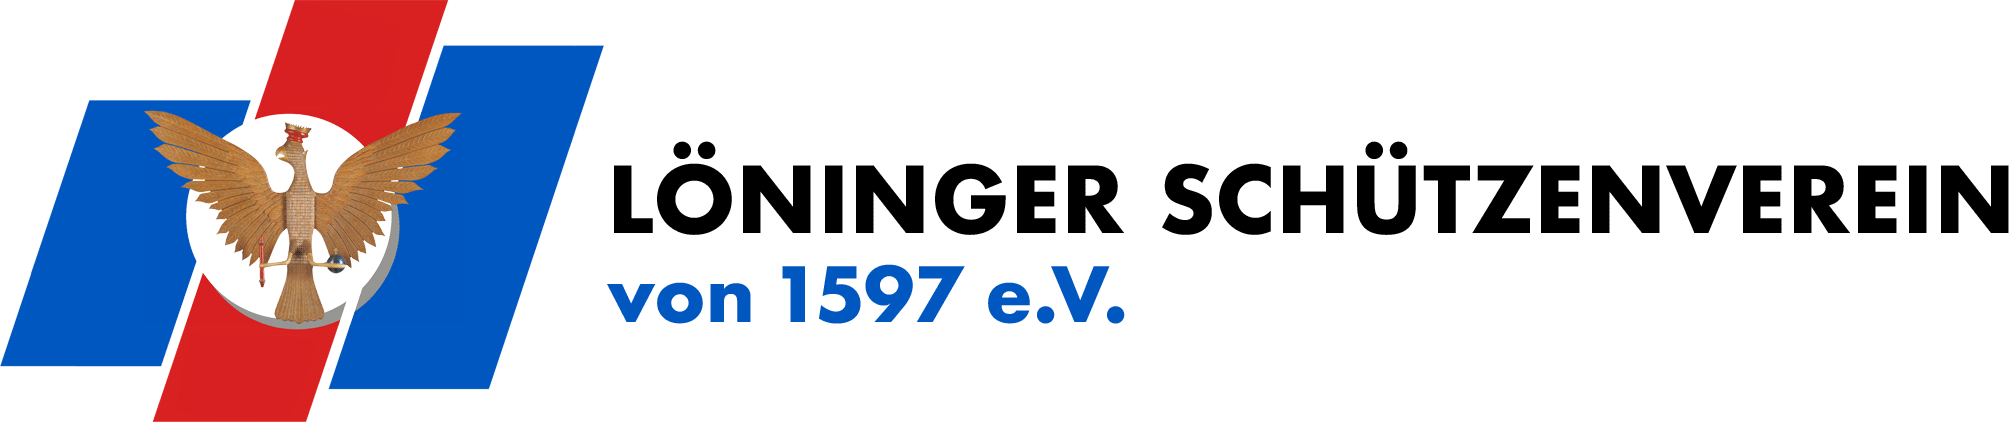 Löninger Schützenverein von 1597 e.V.